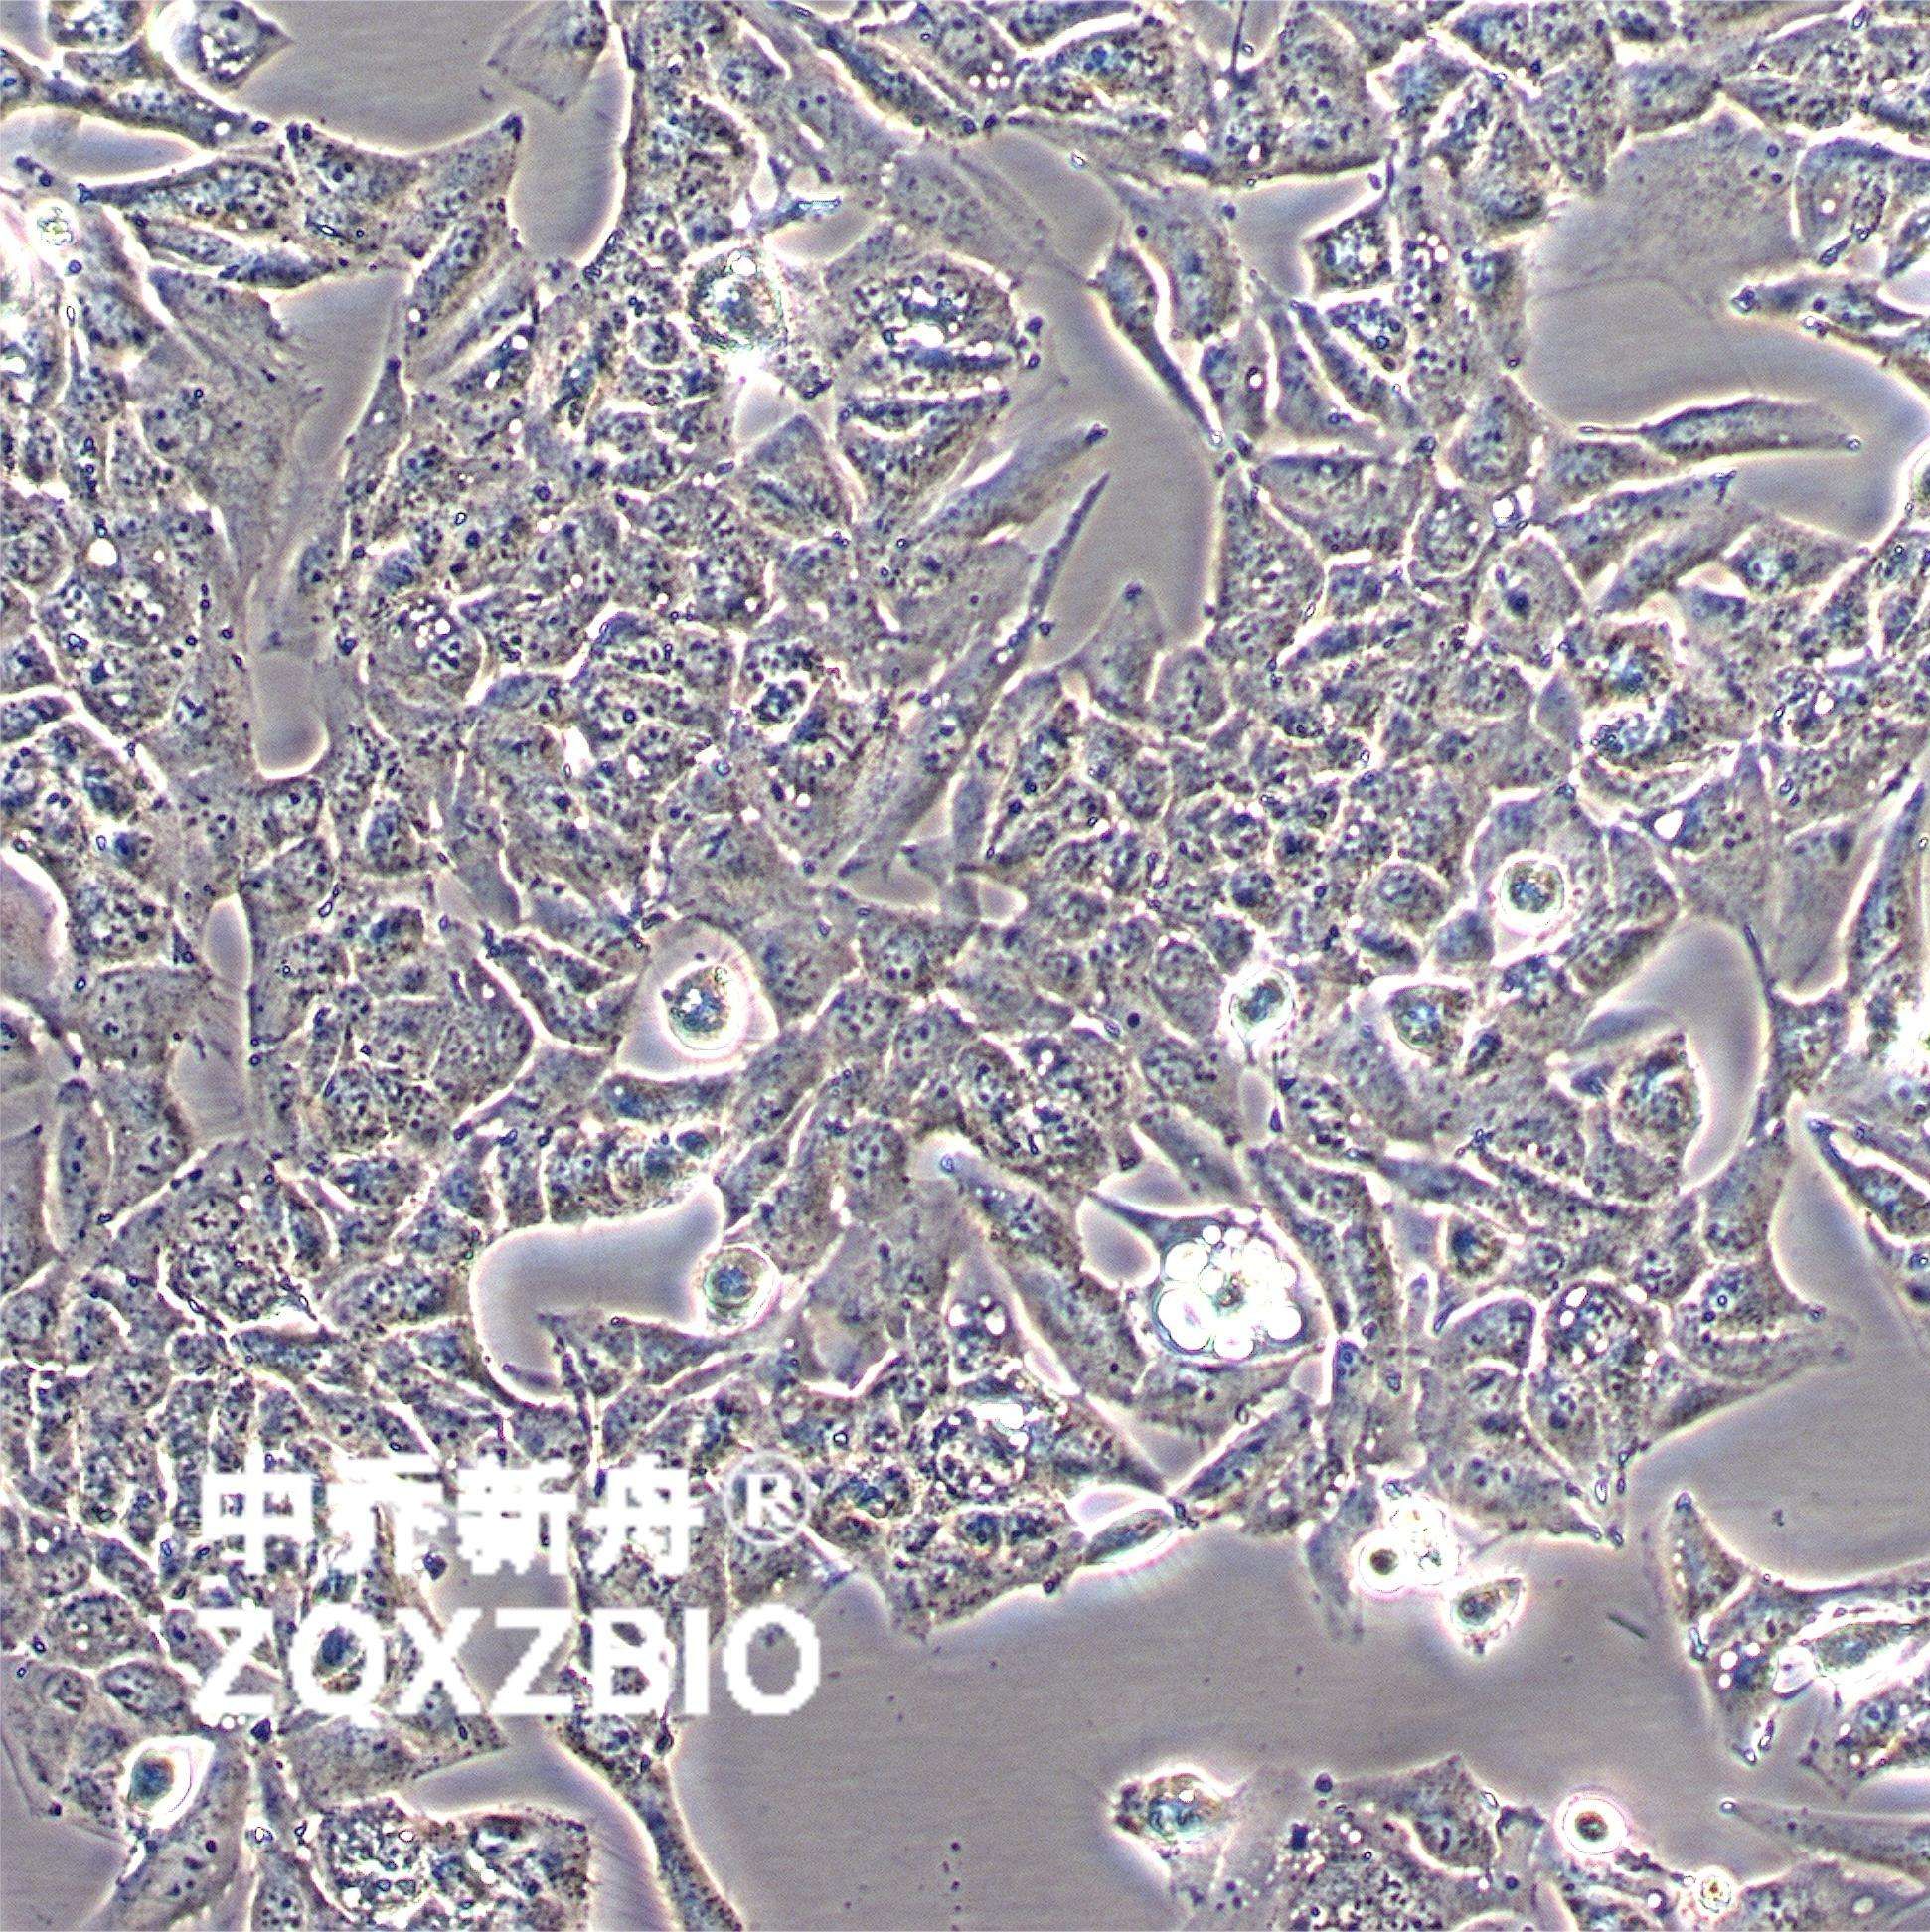 Caki-2人乳头状肾细胞癌细胞